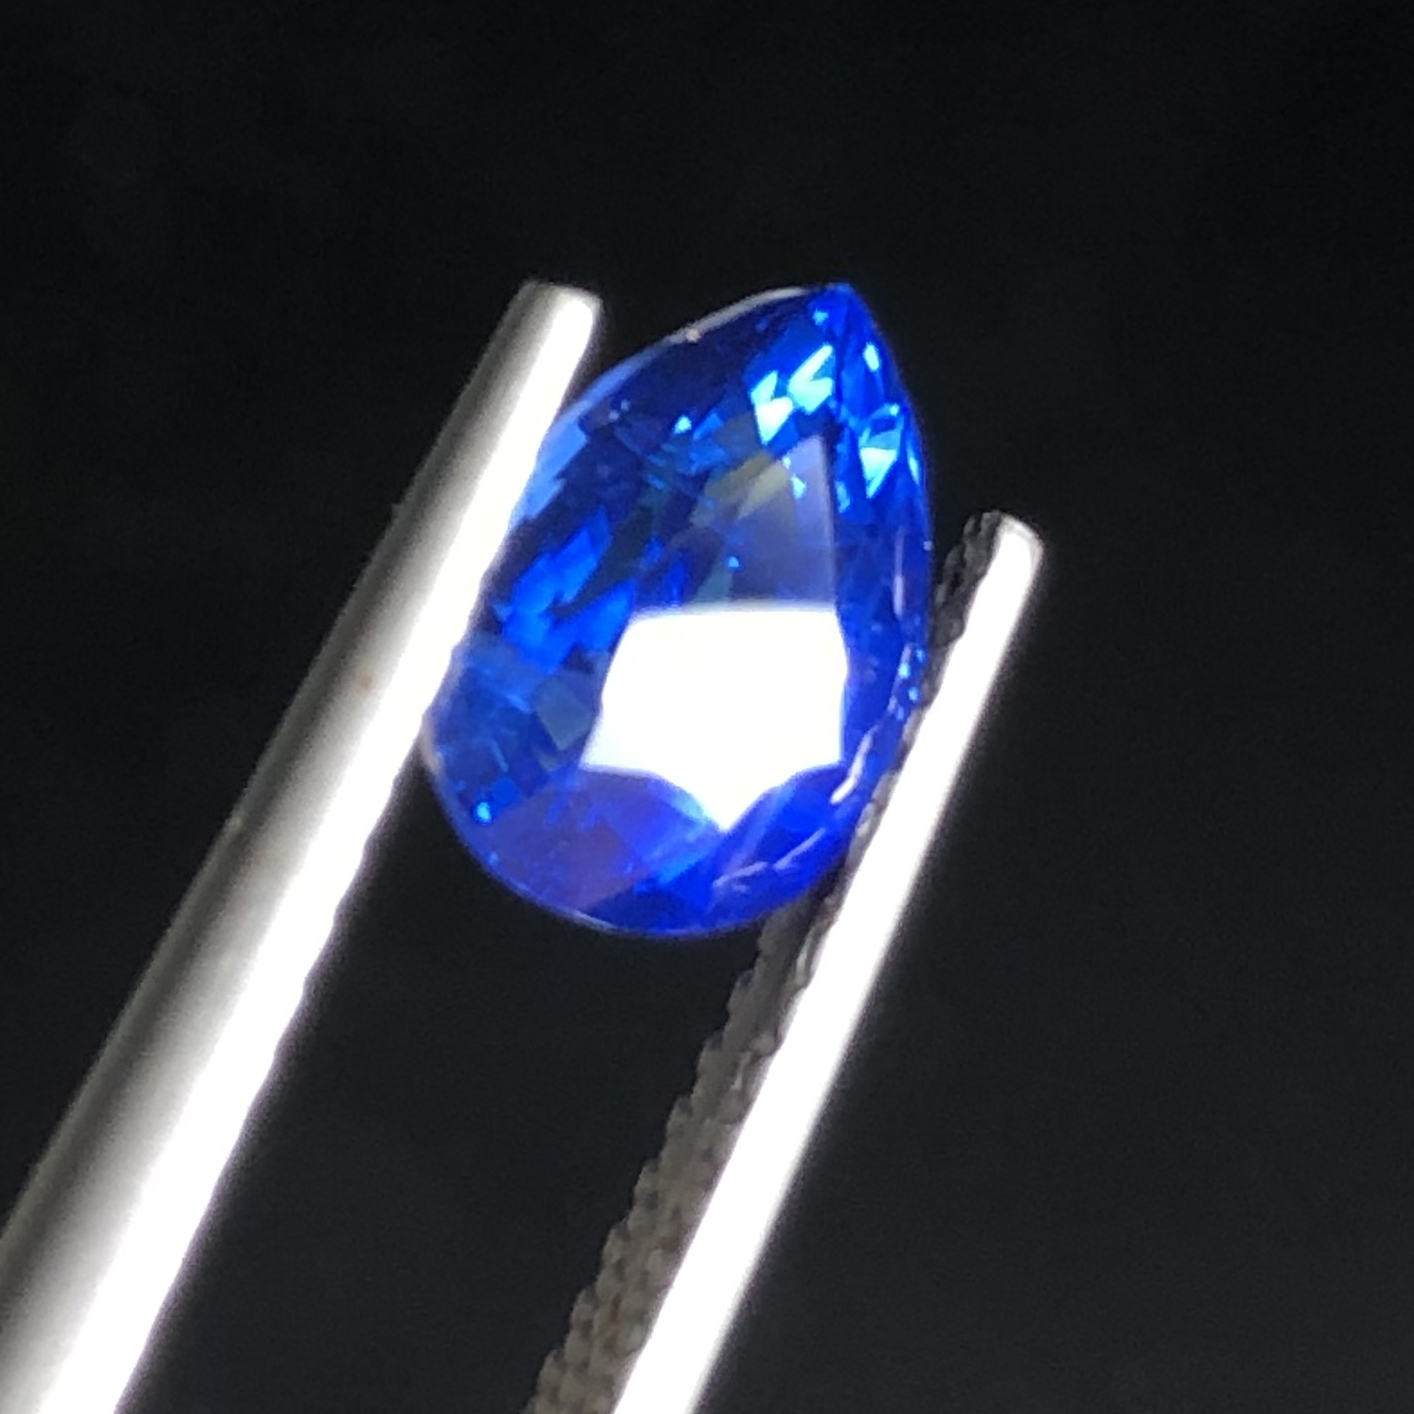 Pear Cut Blue Sapphire